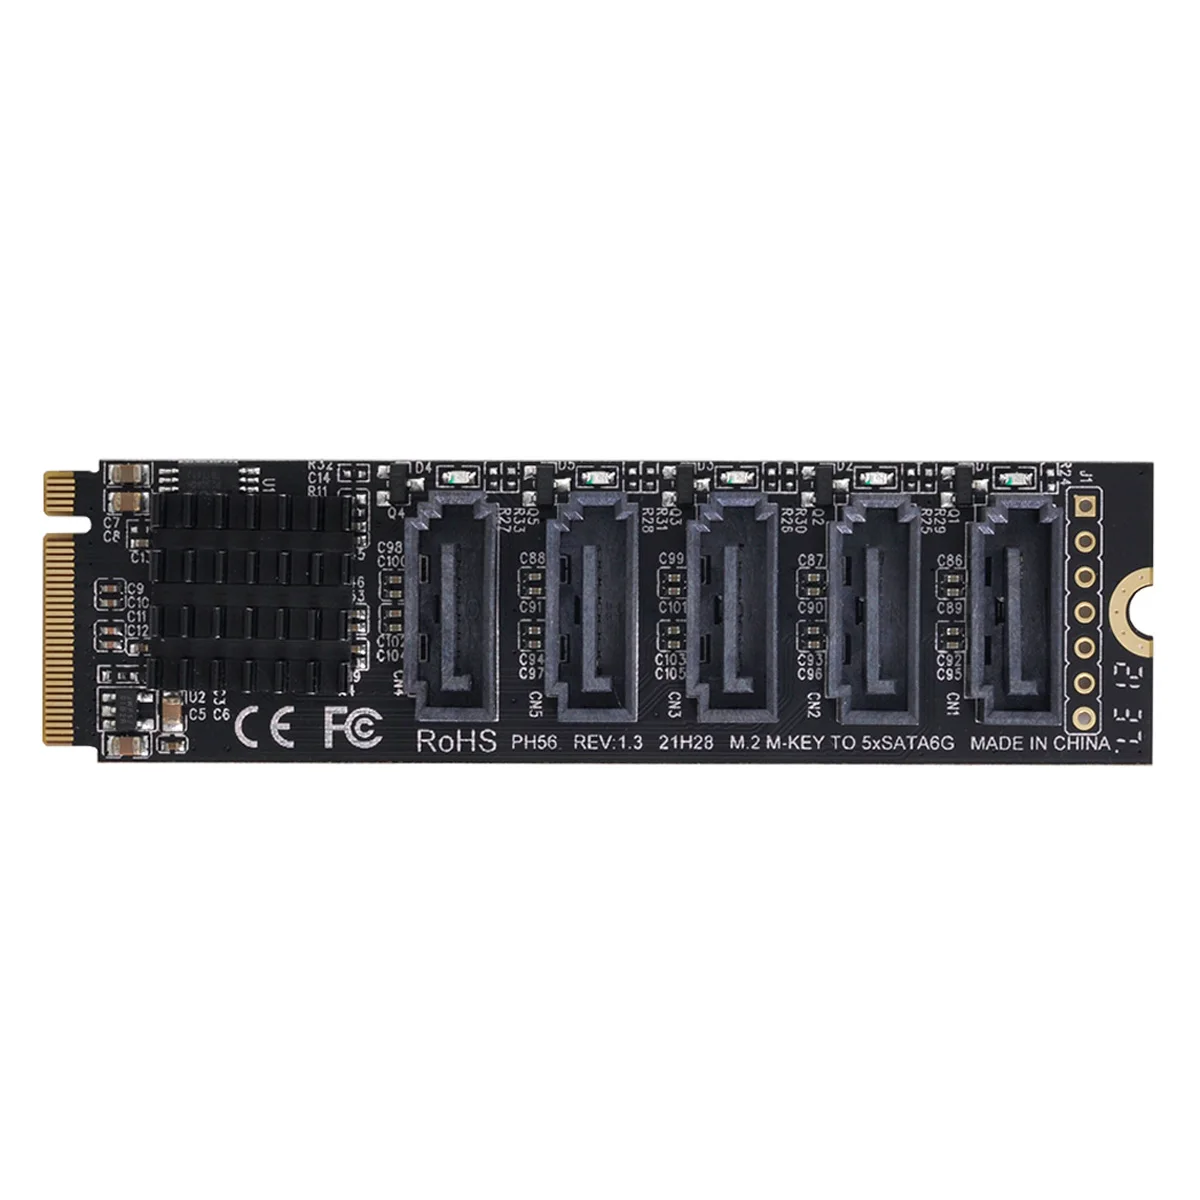 Cablecc NGFF NVME M-Key PCI Express, SATA 3.0 6Gbps 5 Uostuose Adapteris Keitiklis Kietojo Disko Išplėtimo kortą JMB585 2280